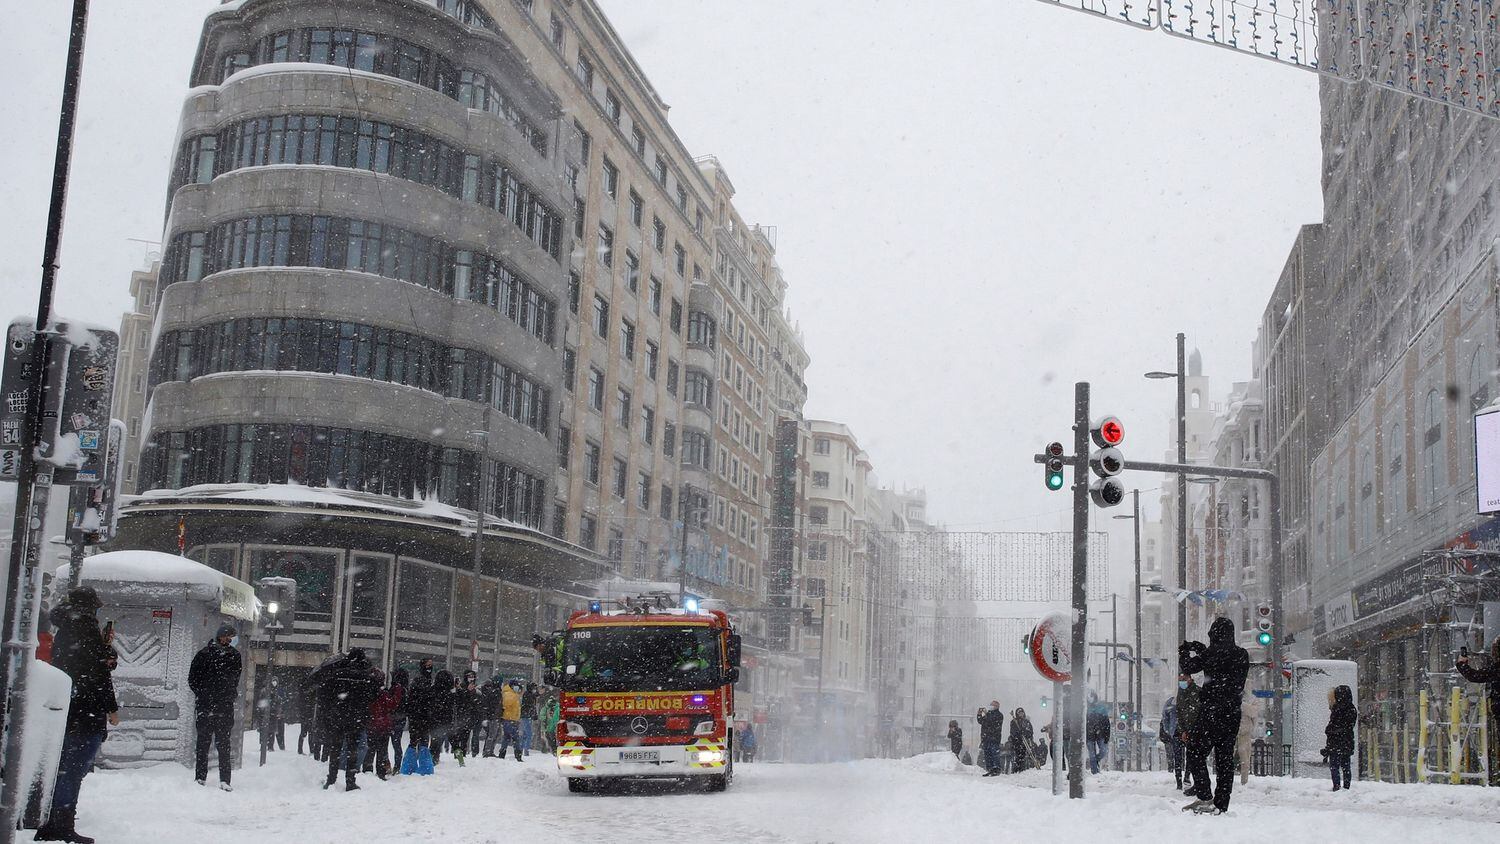 No nieva ni en Oslo: el enero más cálido deja a la ciudad sin un copo - Página 2 JBPQB3FFJREJLAURHEKBARSFEQ